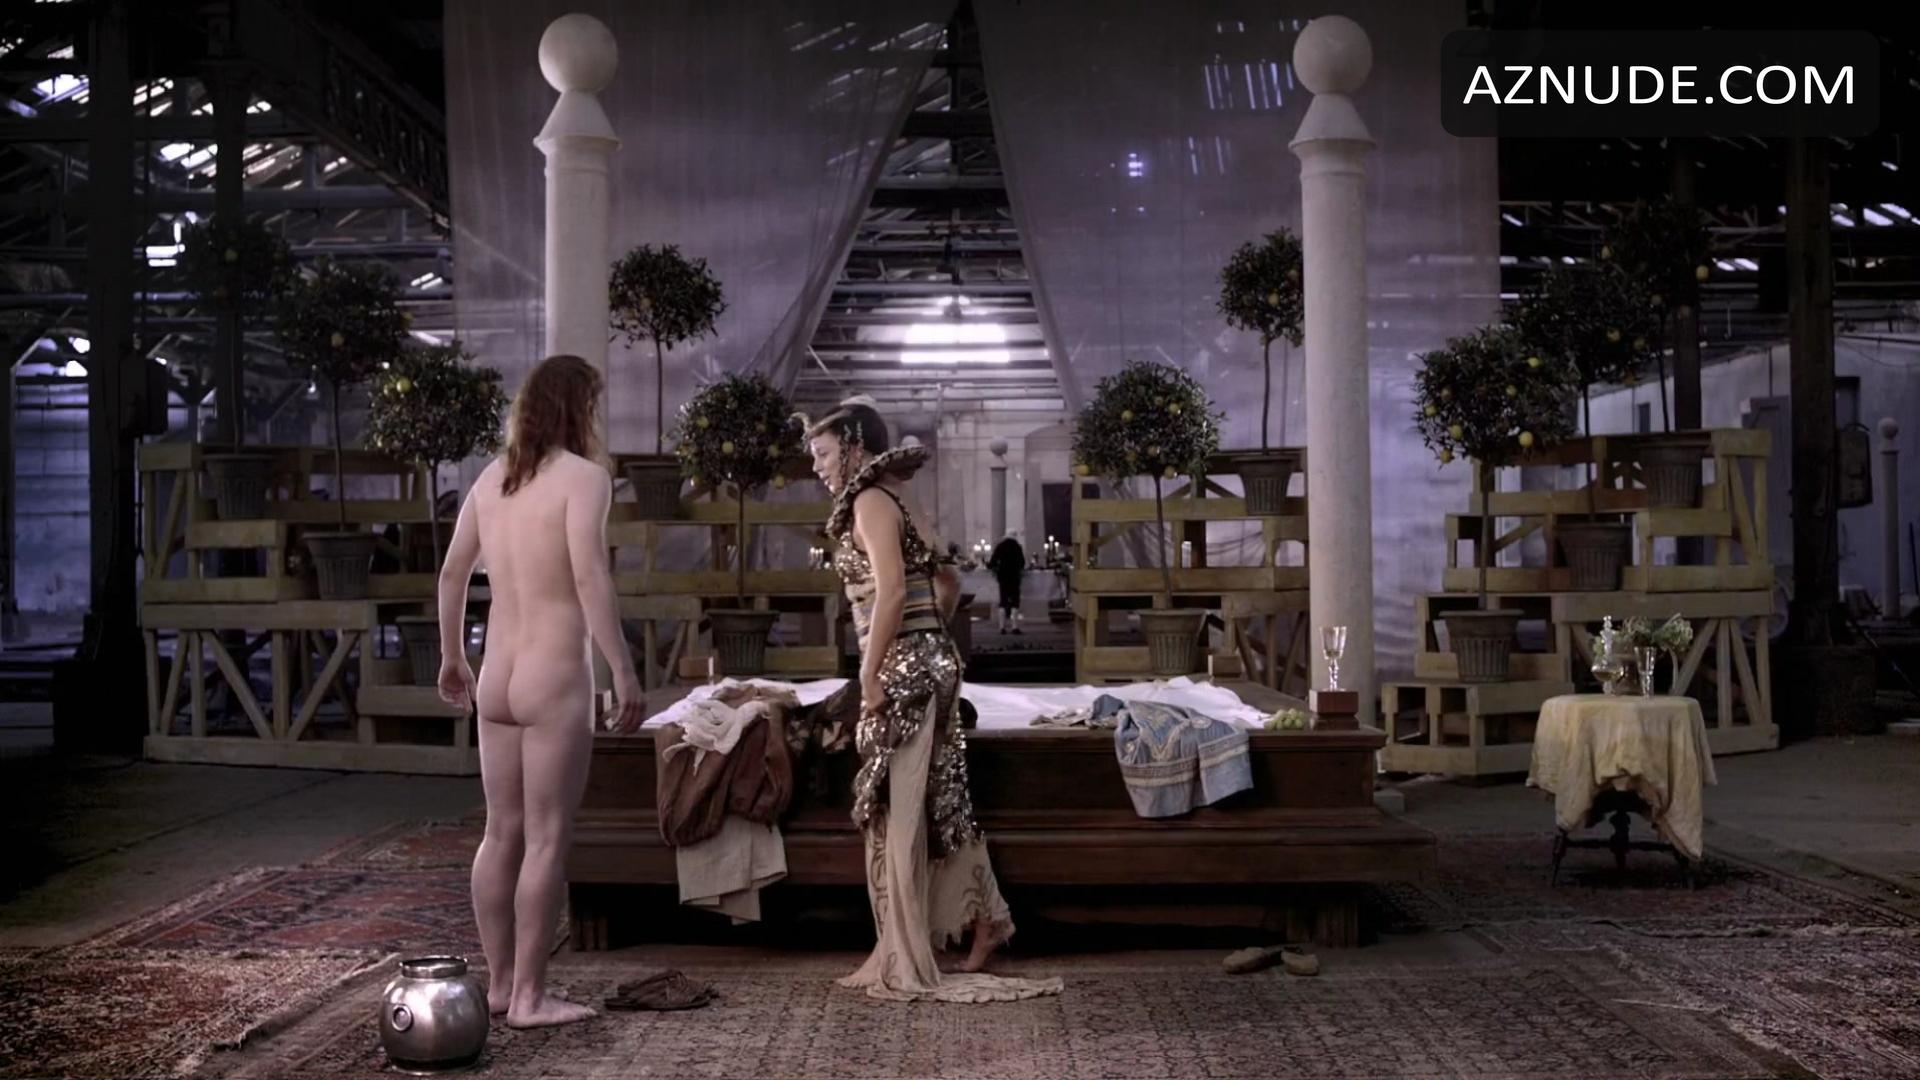 Goltzius And The Pelican Company Nude Scenes Aznude Men